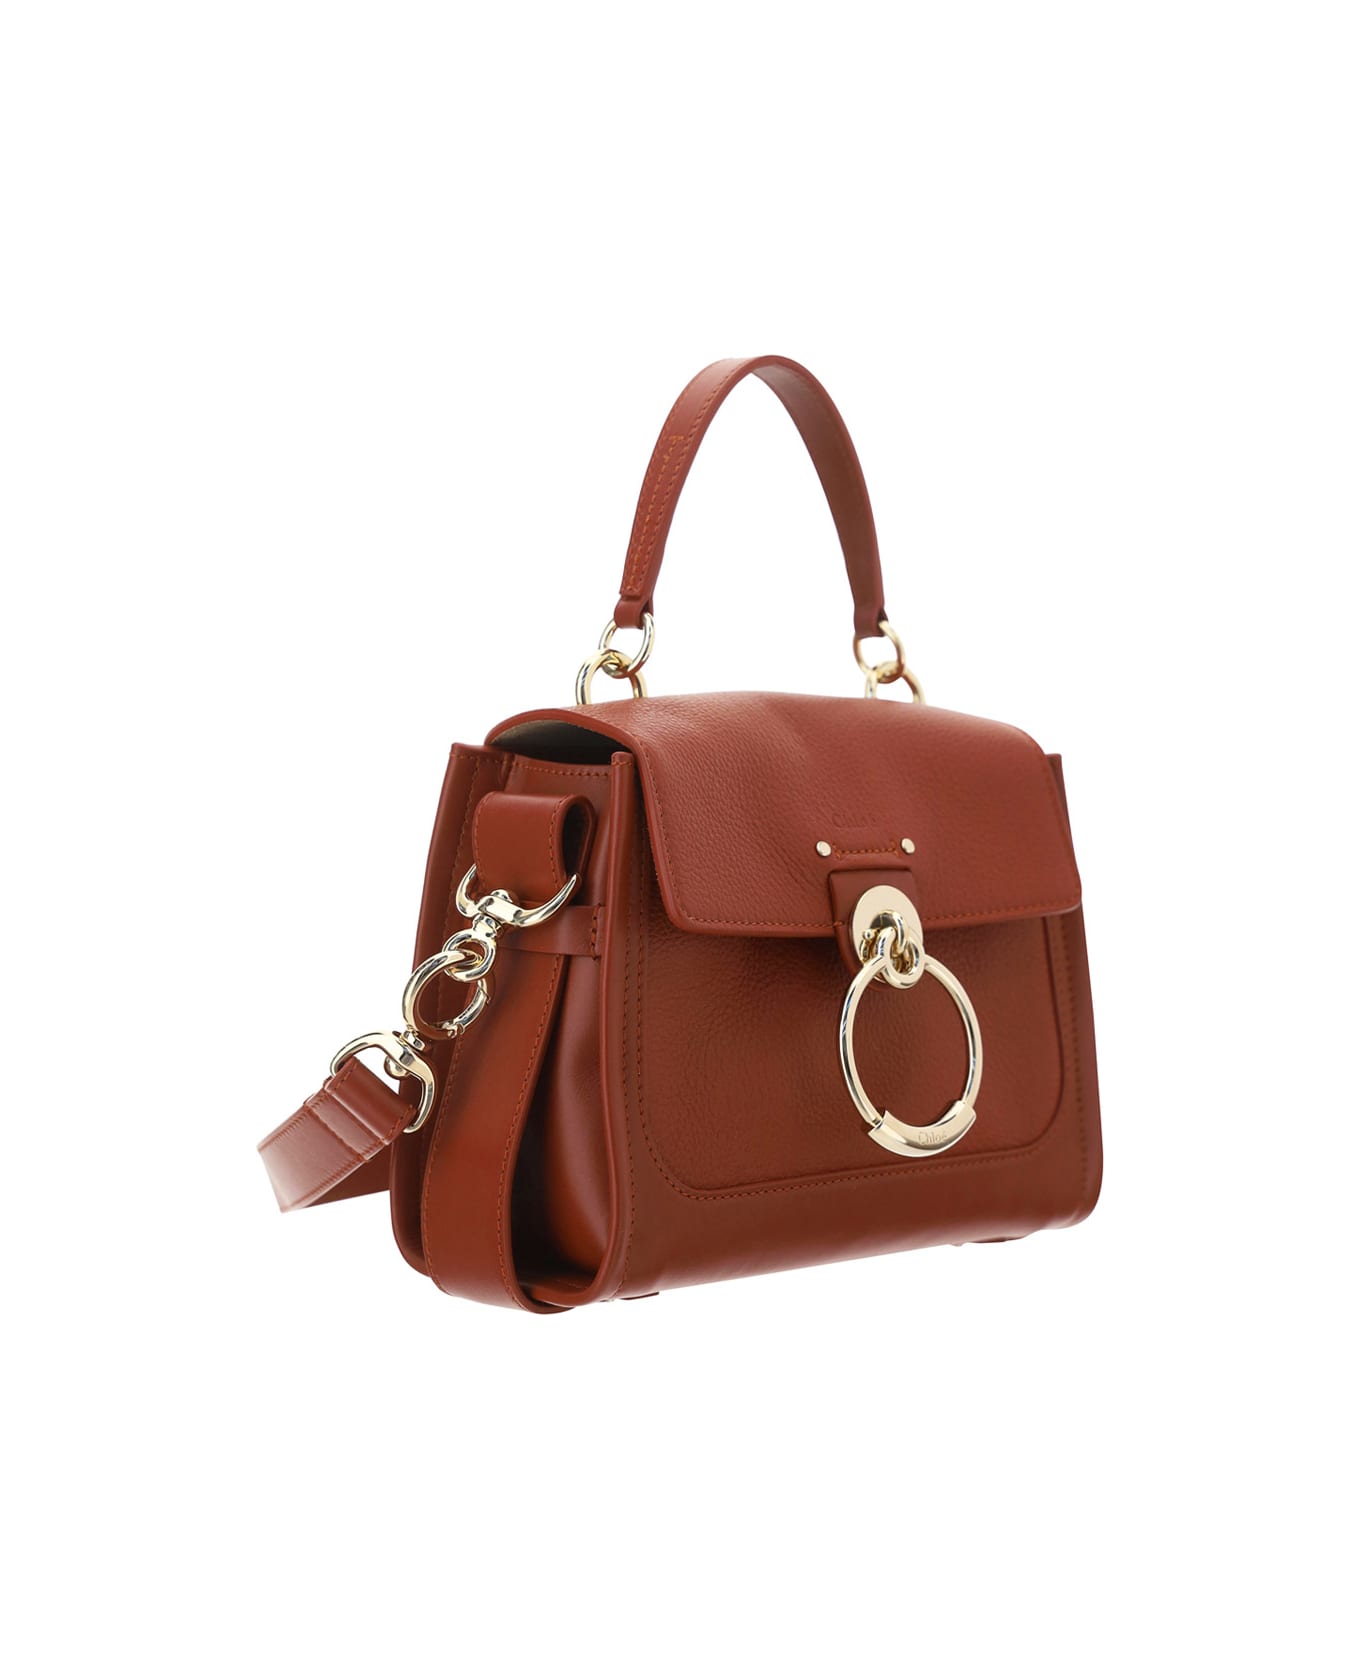 Chloé Tess Handbag - Leather Brown